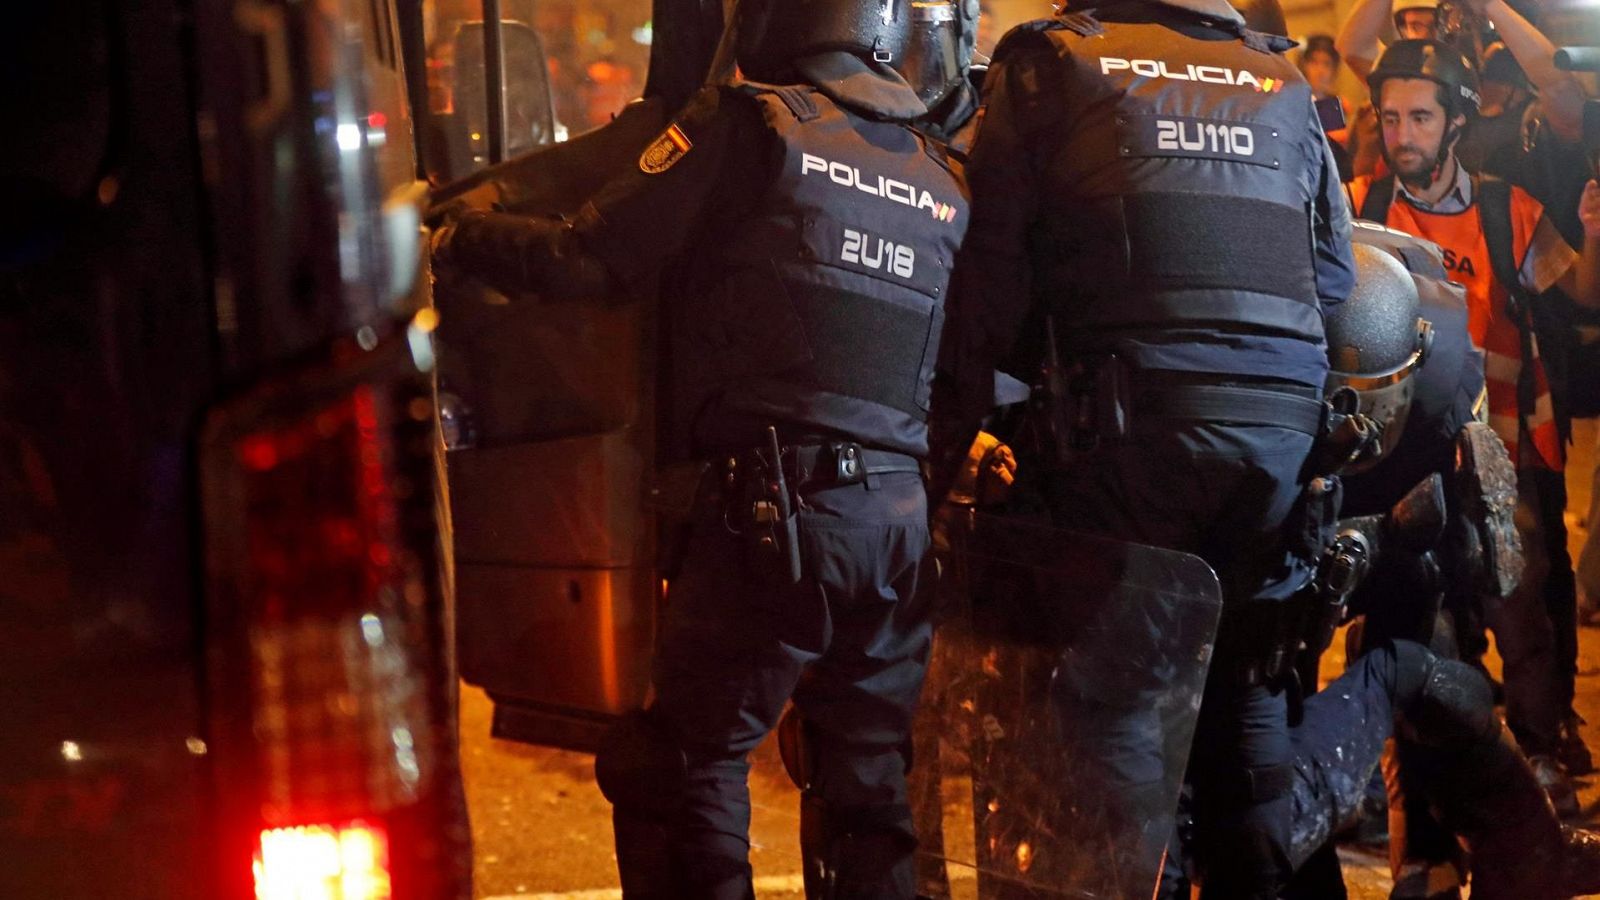 Policías antidisturbios atienden a un compañero herido durante los altercados en Barcelona por la sentencia del 'procès', en octubre de 2019.